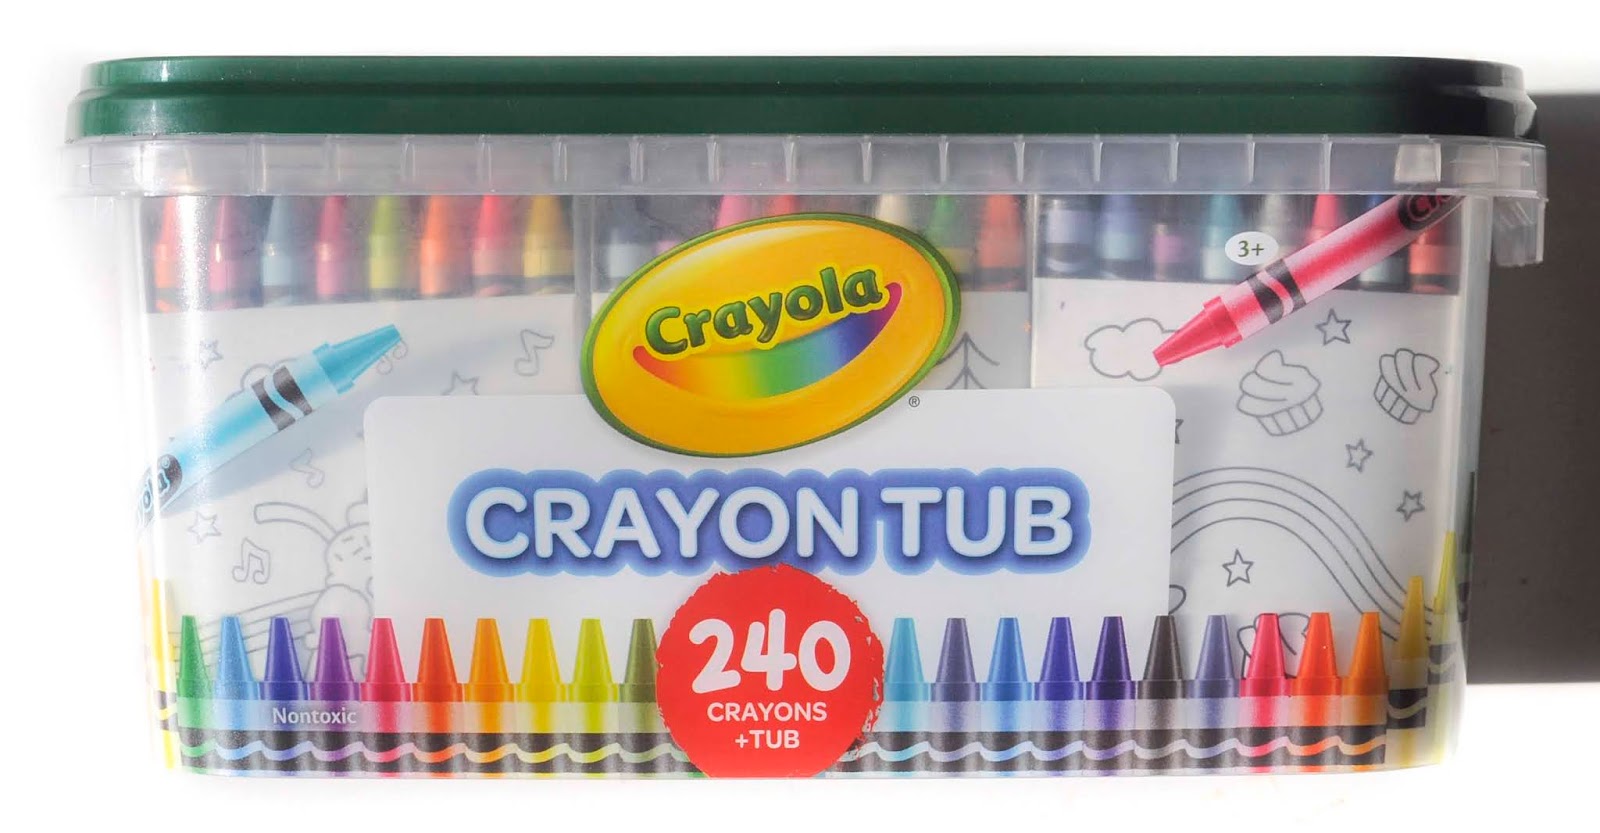 240 Count Crayola Crayon Tub